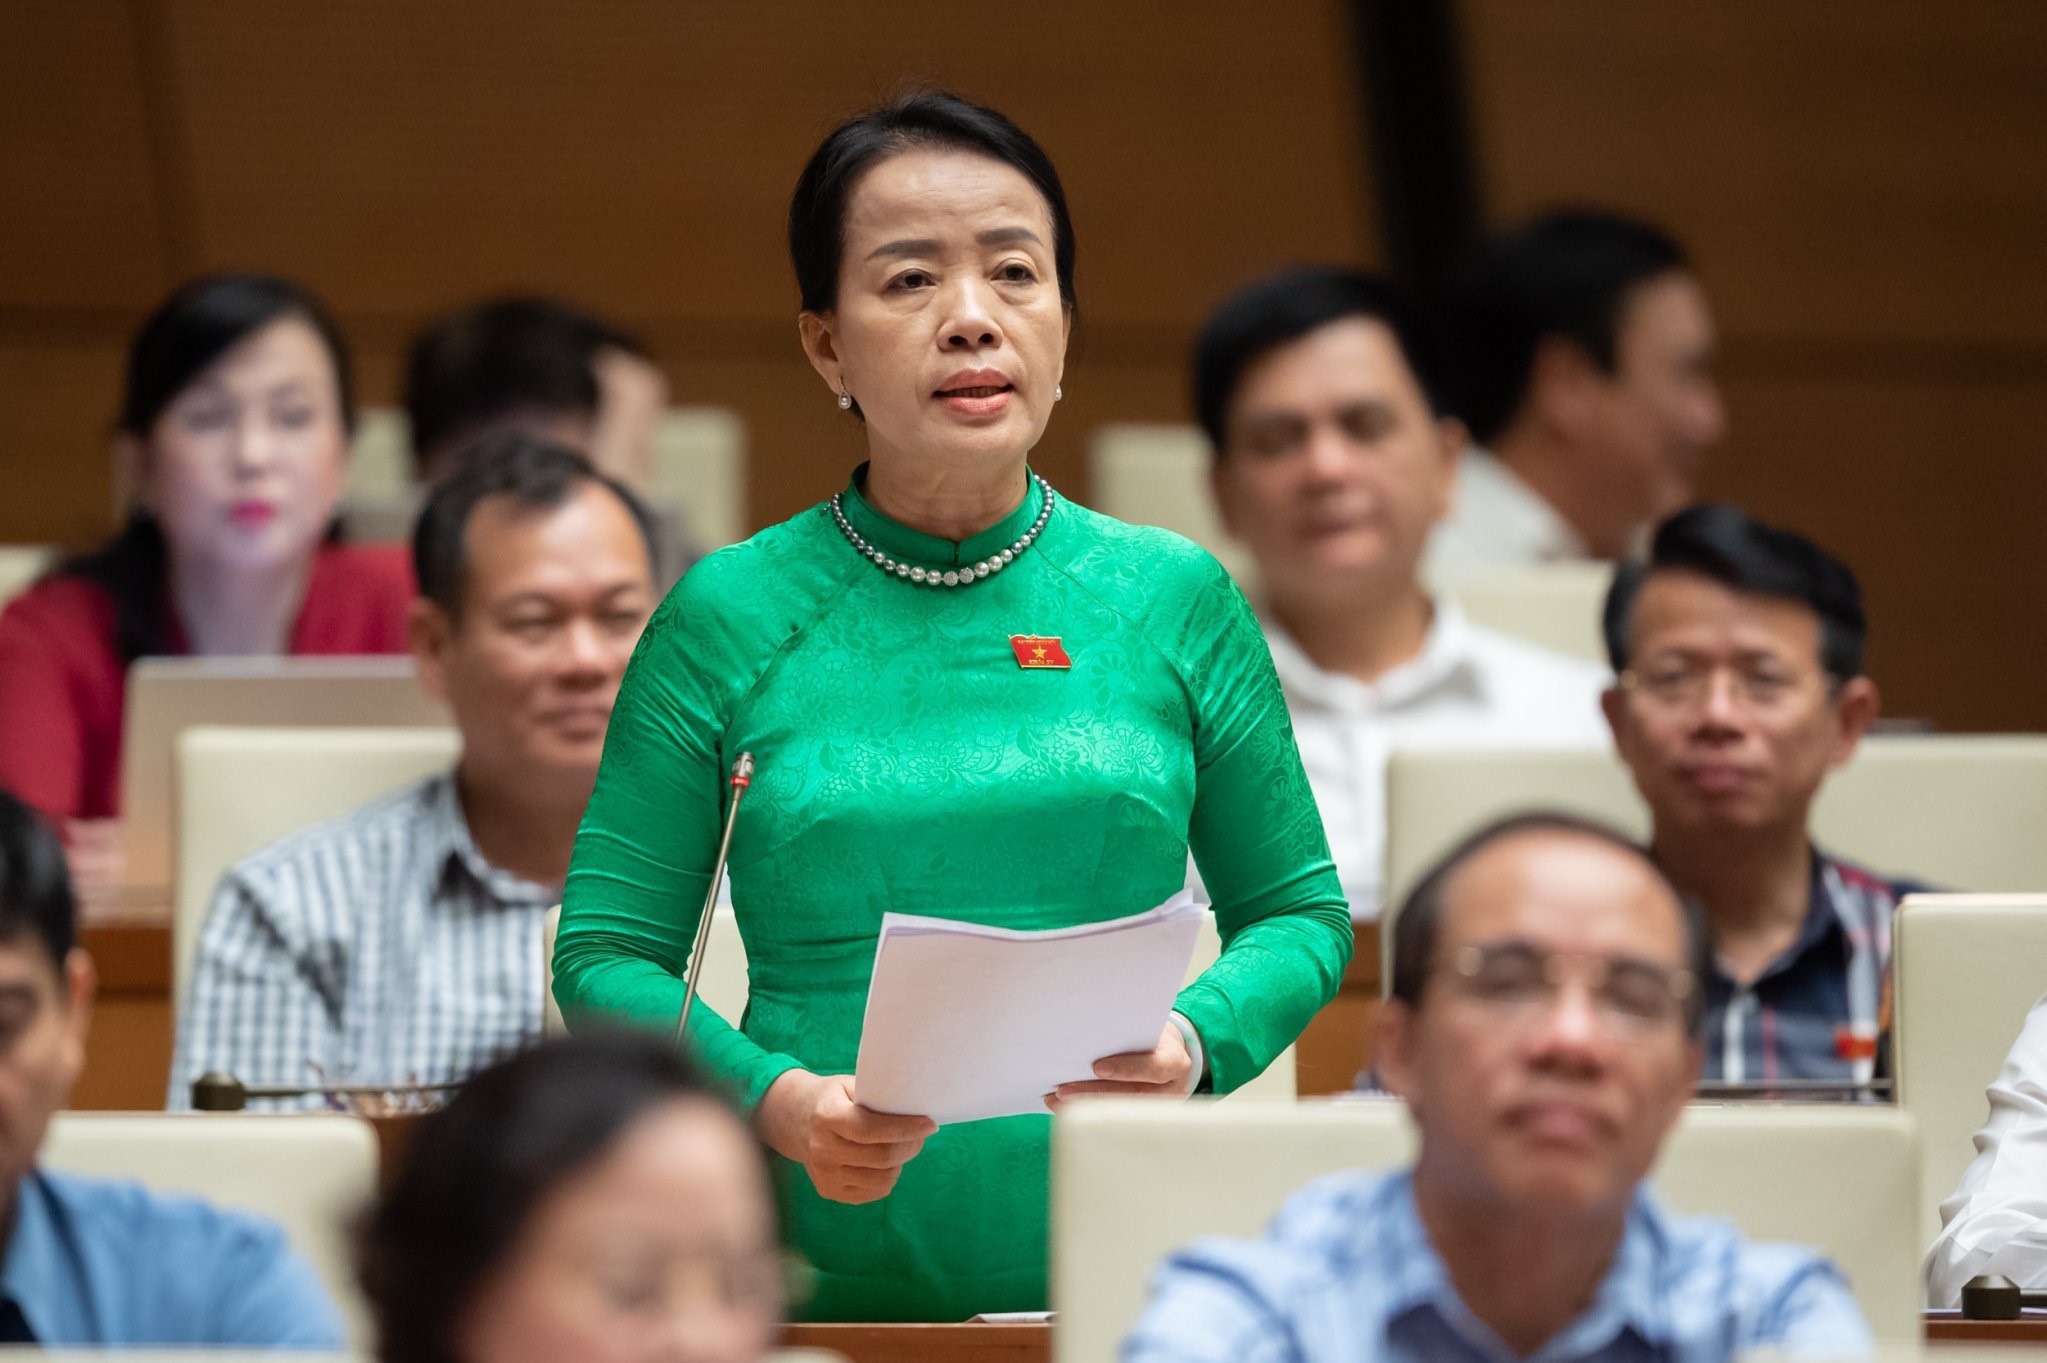 17 năm làm đại biểu Quốc hội, bà Nguyễn Thị Kim Thúy luôn thể hiện tinh thần, trách nhiệm của đại biểu dân cử, tích cực phát biểu, chất vấn các vấn đề nóng trước nghị trường Quốc hội. Ảnh: PV